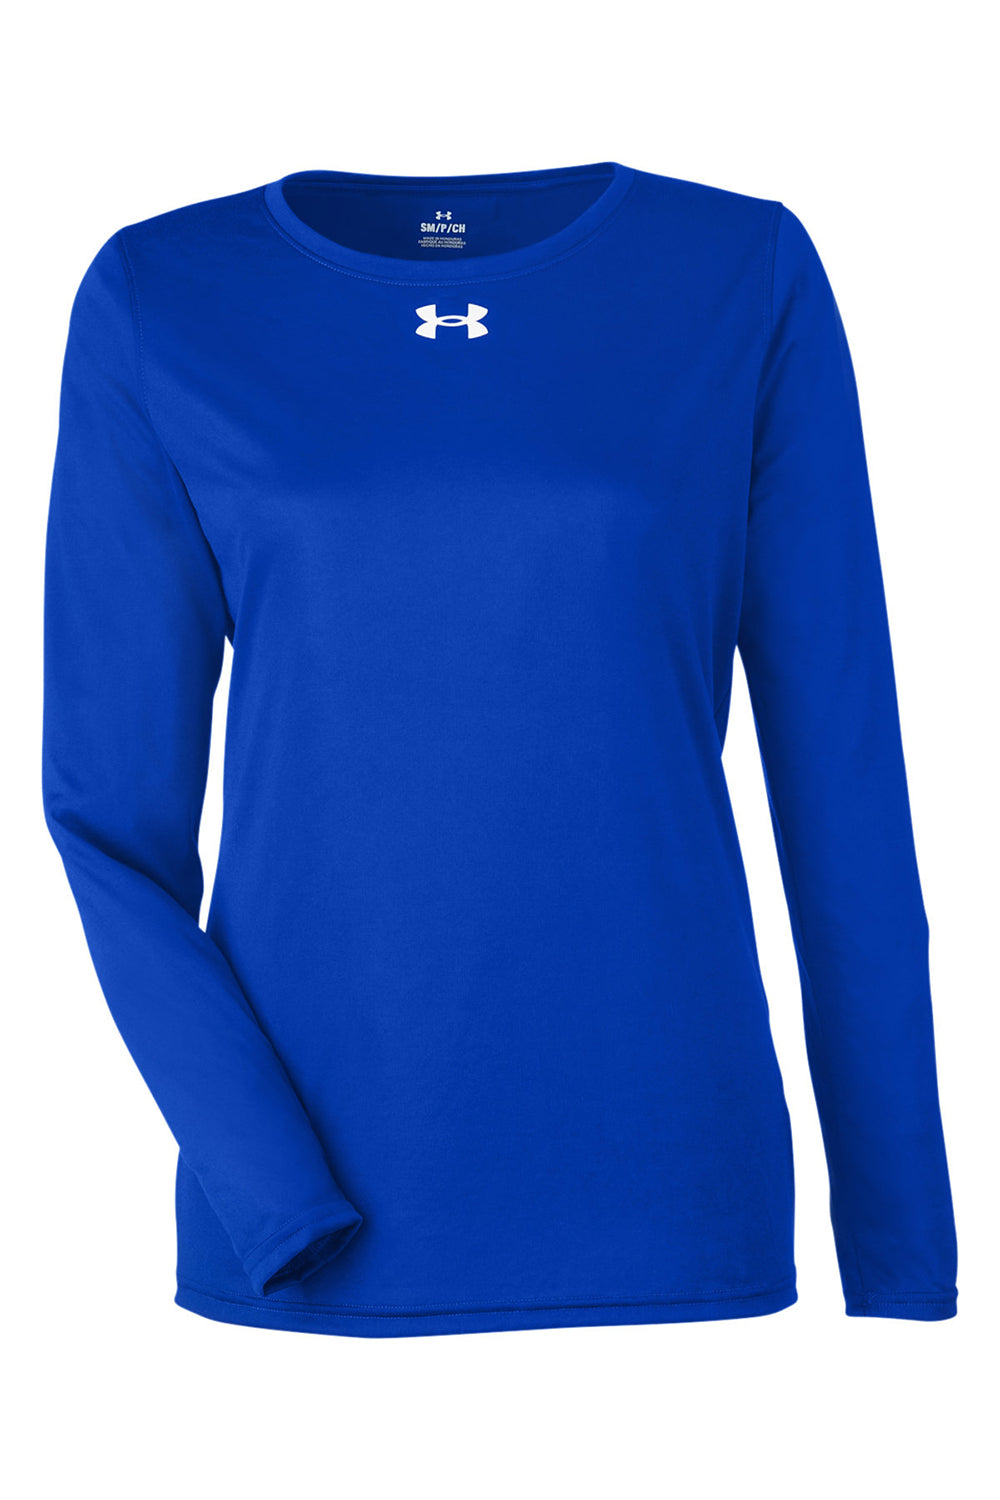 Under Armour 1376852 Womens Team Tech Moisture Wicking Long Sleeve Crewneck T-Shirt Royal Blue Flat Front